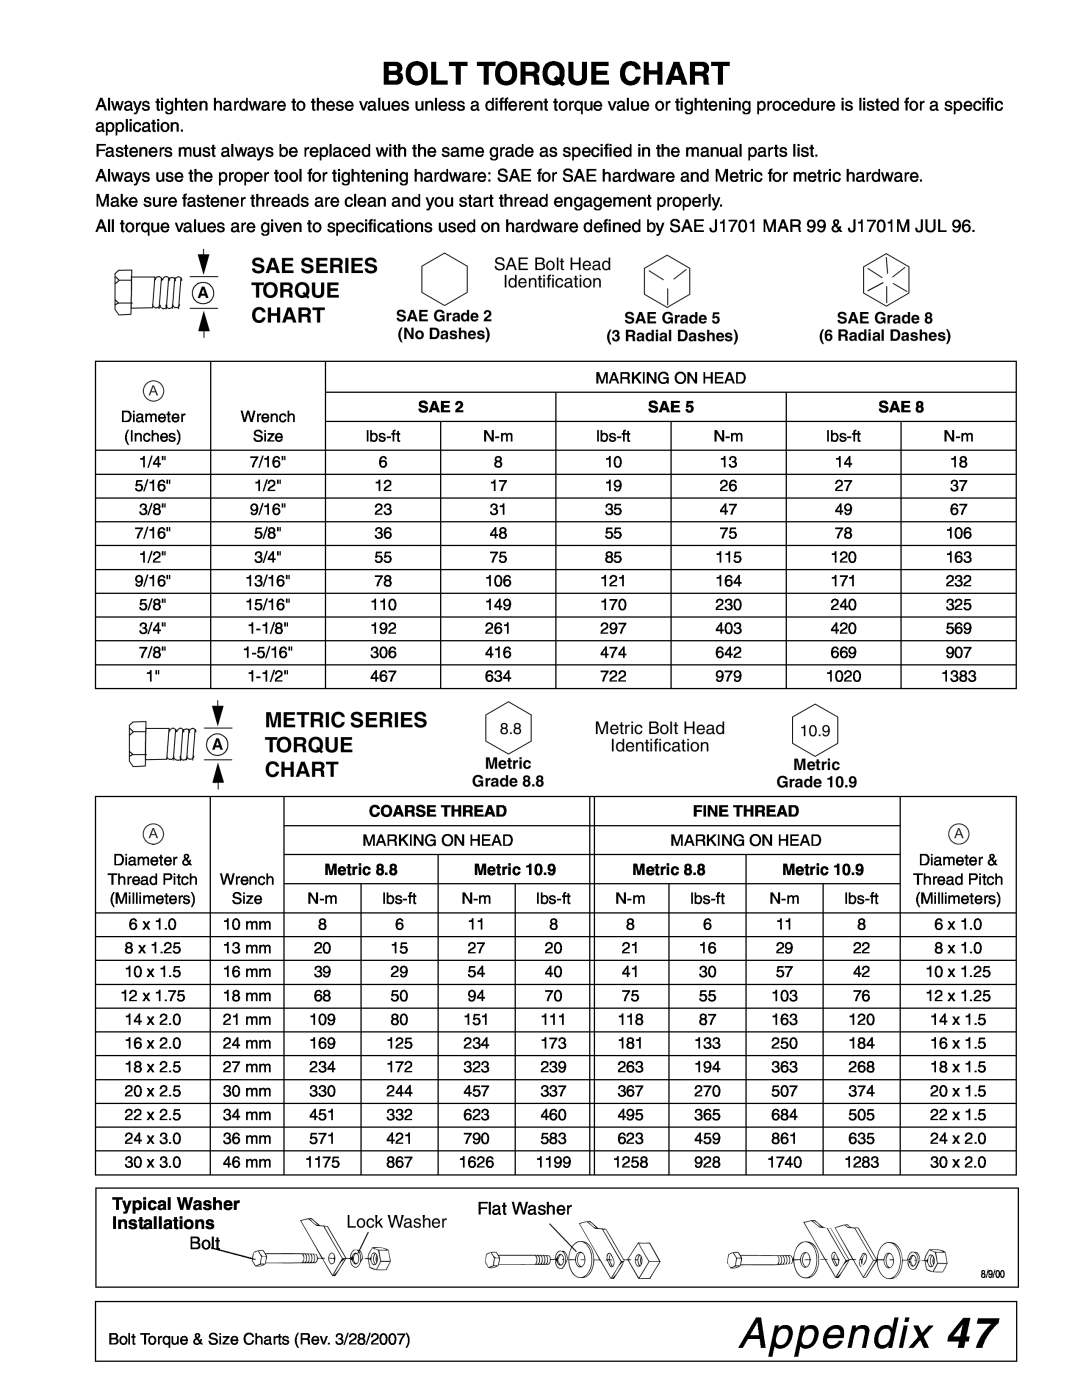 Woods Equipment MX54T, MX61T manual Appendix, Bolt Torque Chart, Sae Series A Torque Chart, Metric Series 